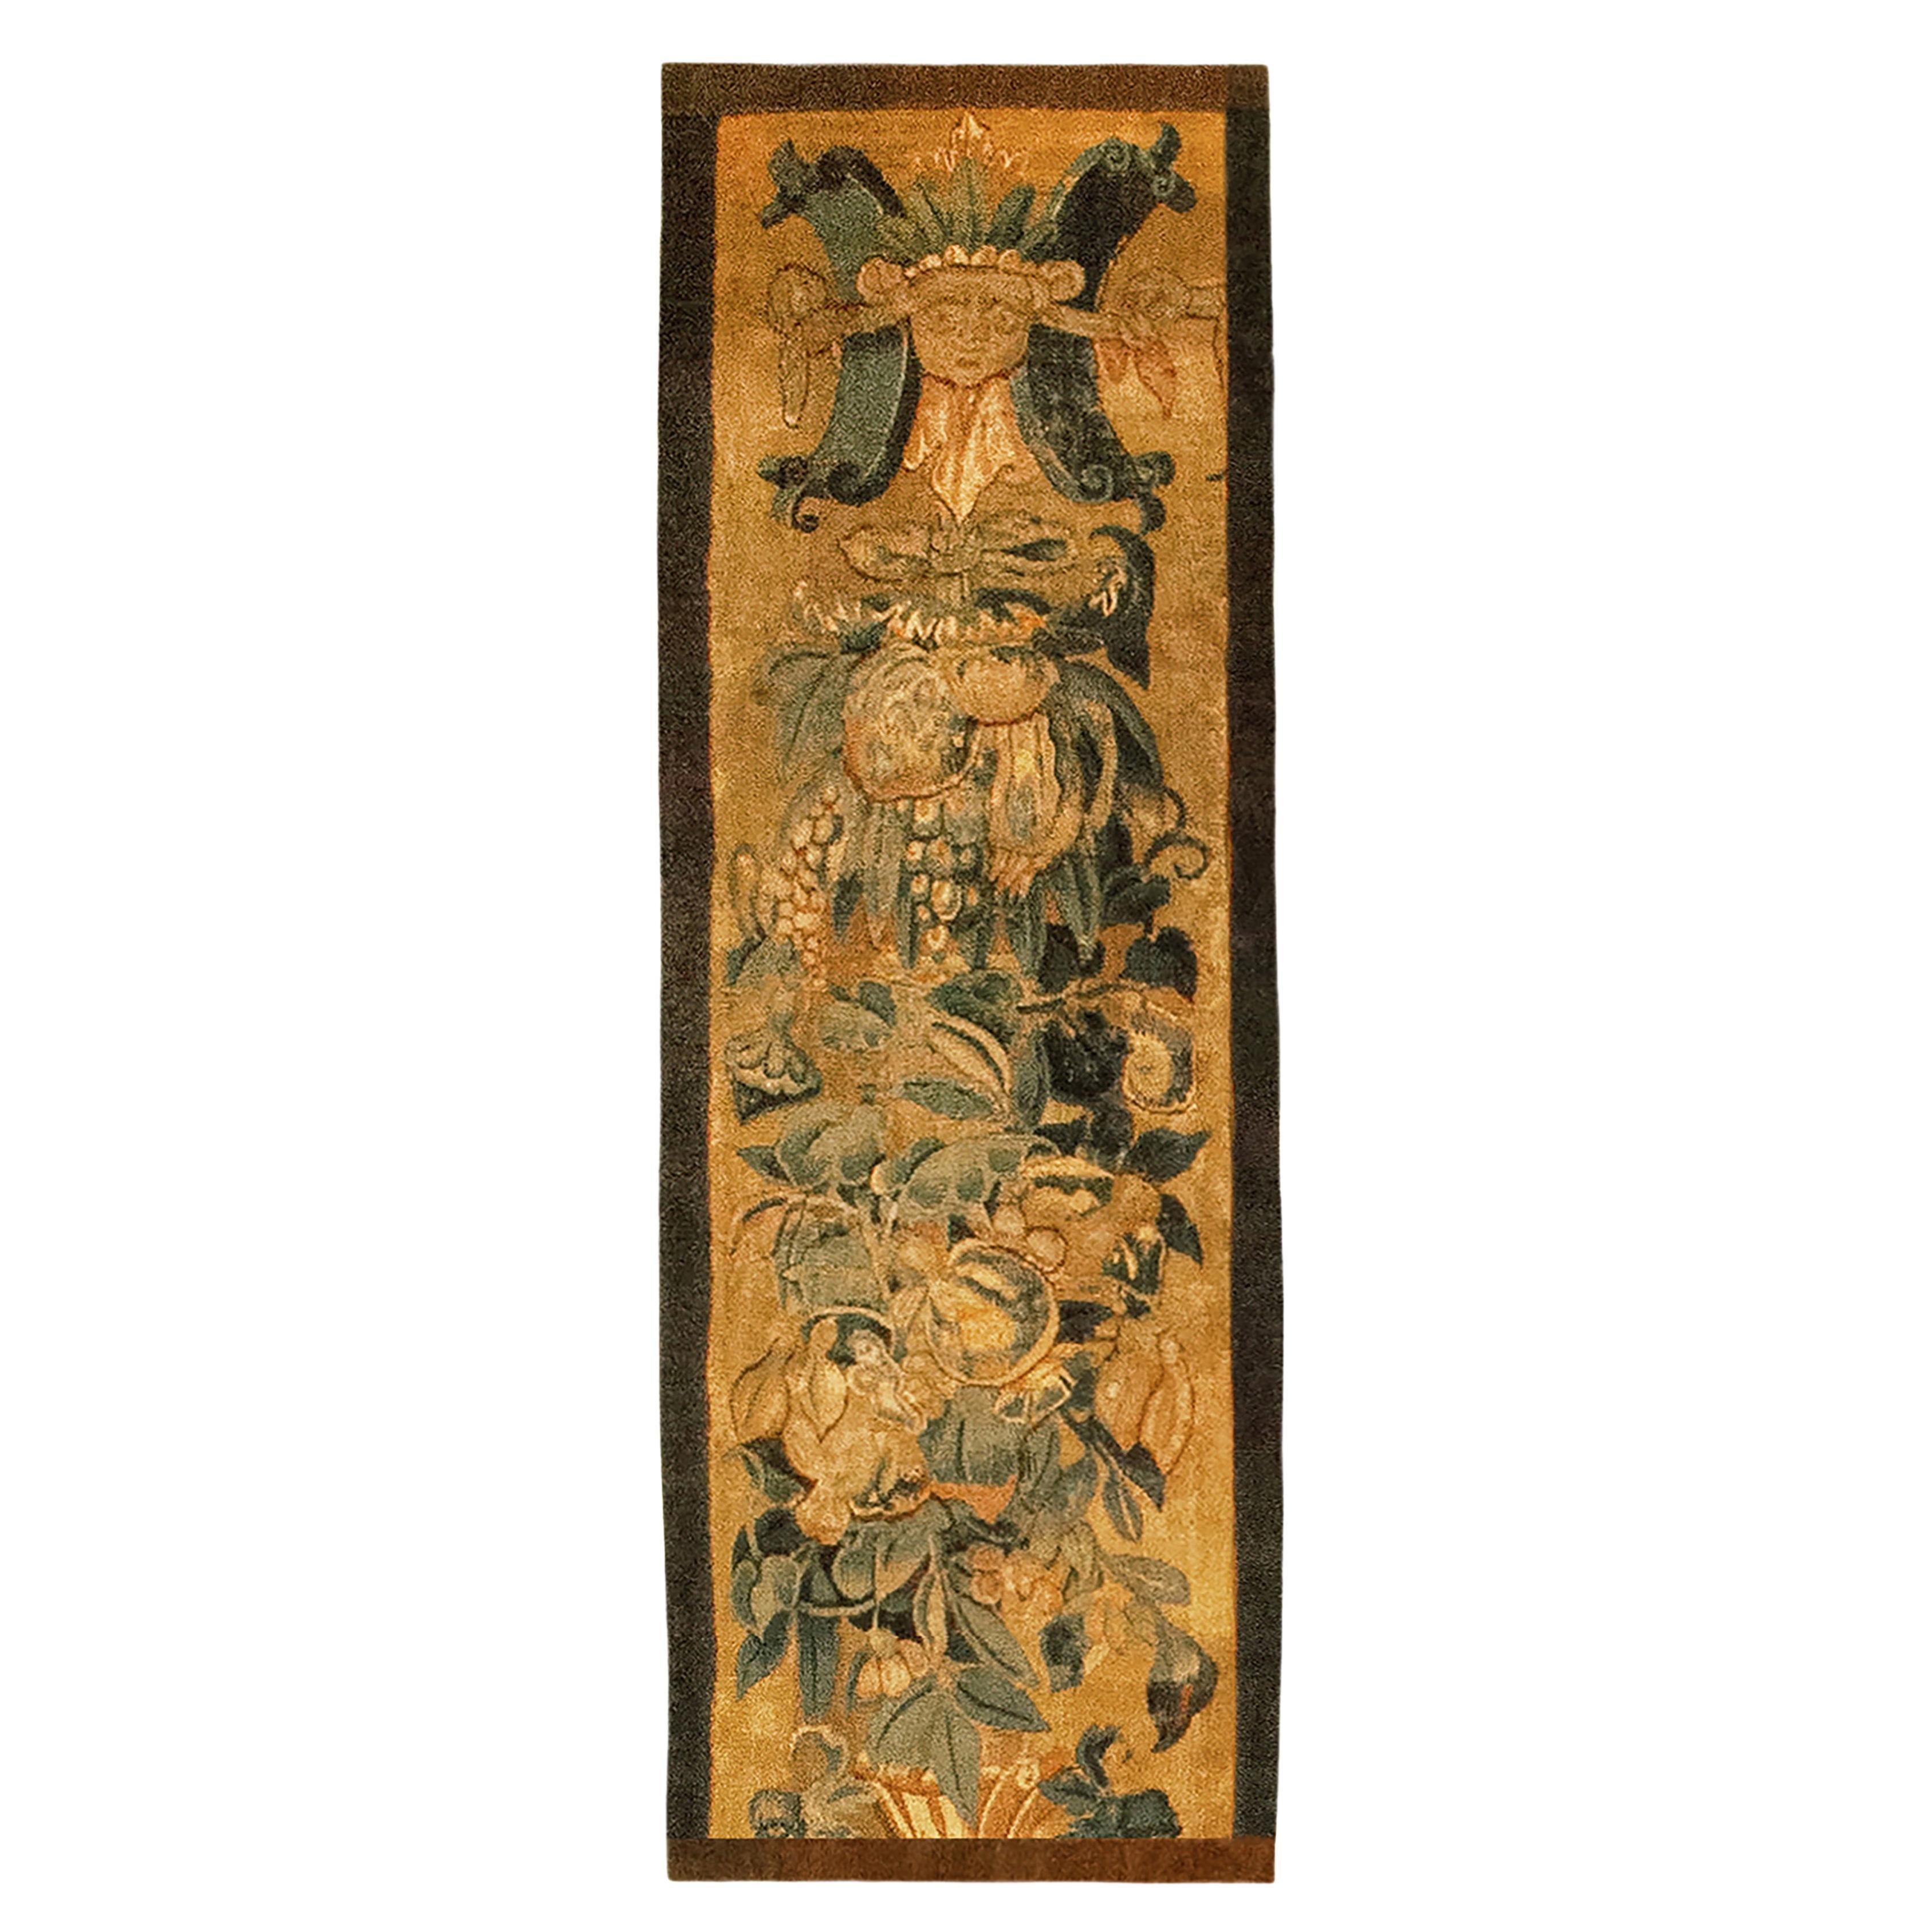 Historische flämische Wandteppichplatte des späten 16. Jahrhunderts, vertikal orientiert, geblümt